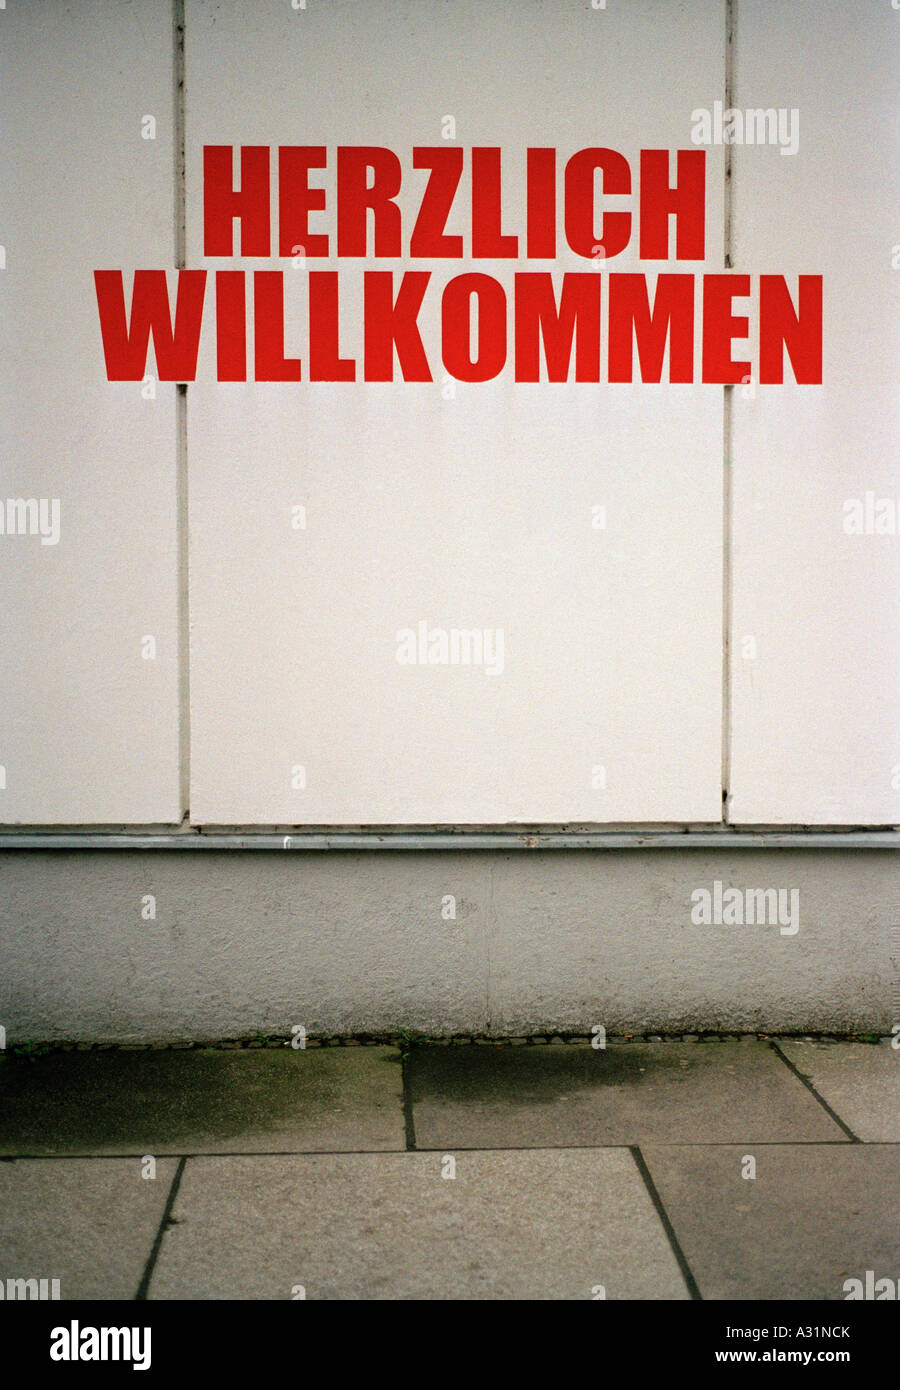 Herzlich Willkommen sign on building exterior Stock Photo